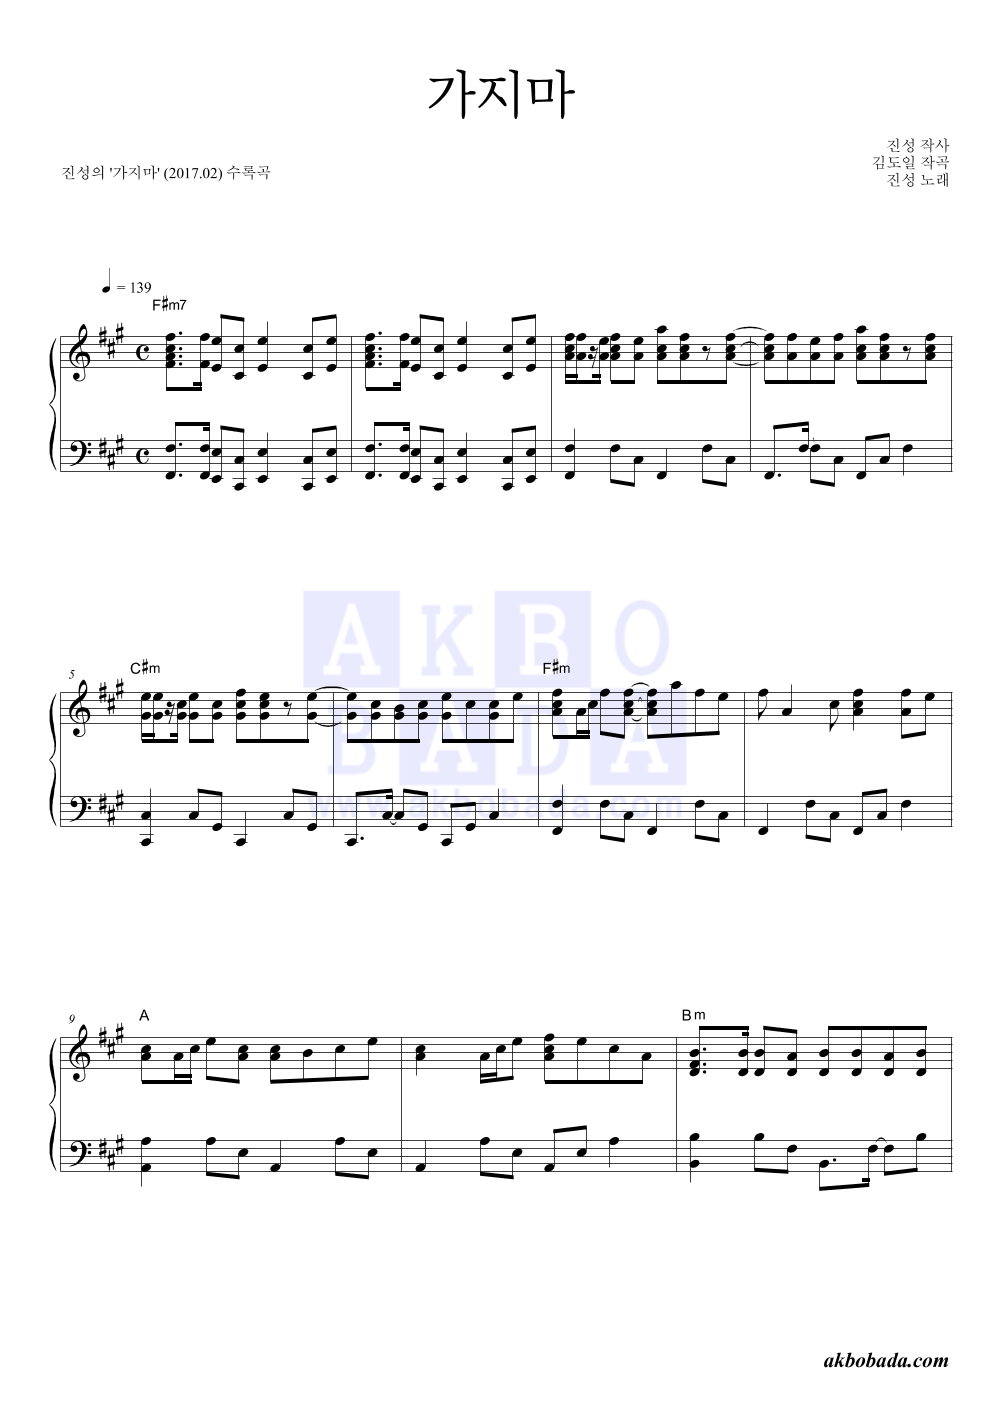 진성 - 가지마 피아노 2단 악보 